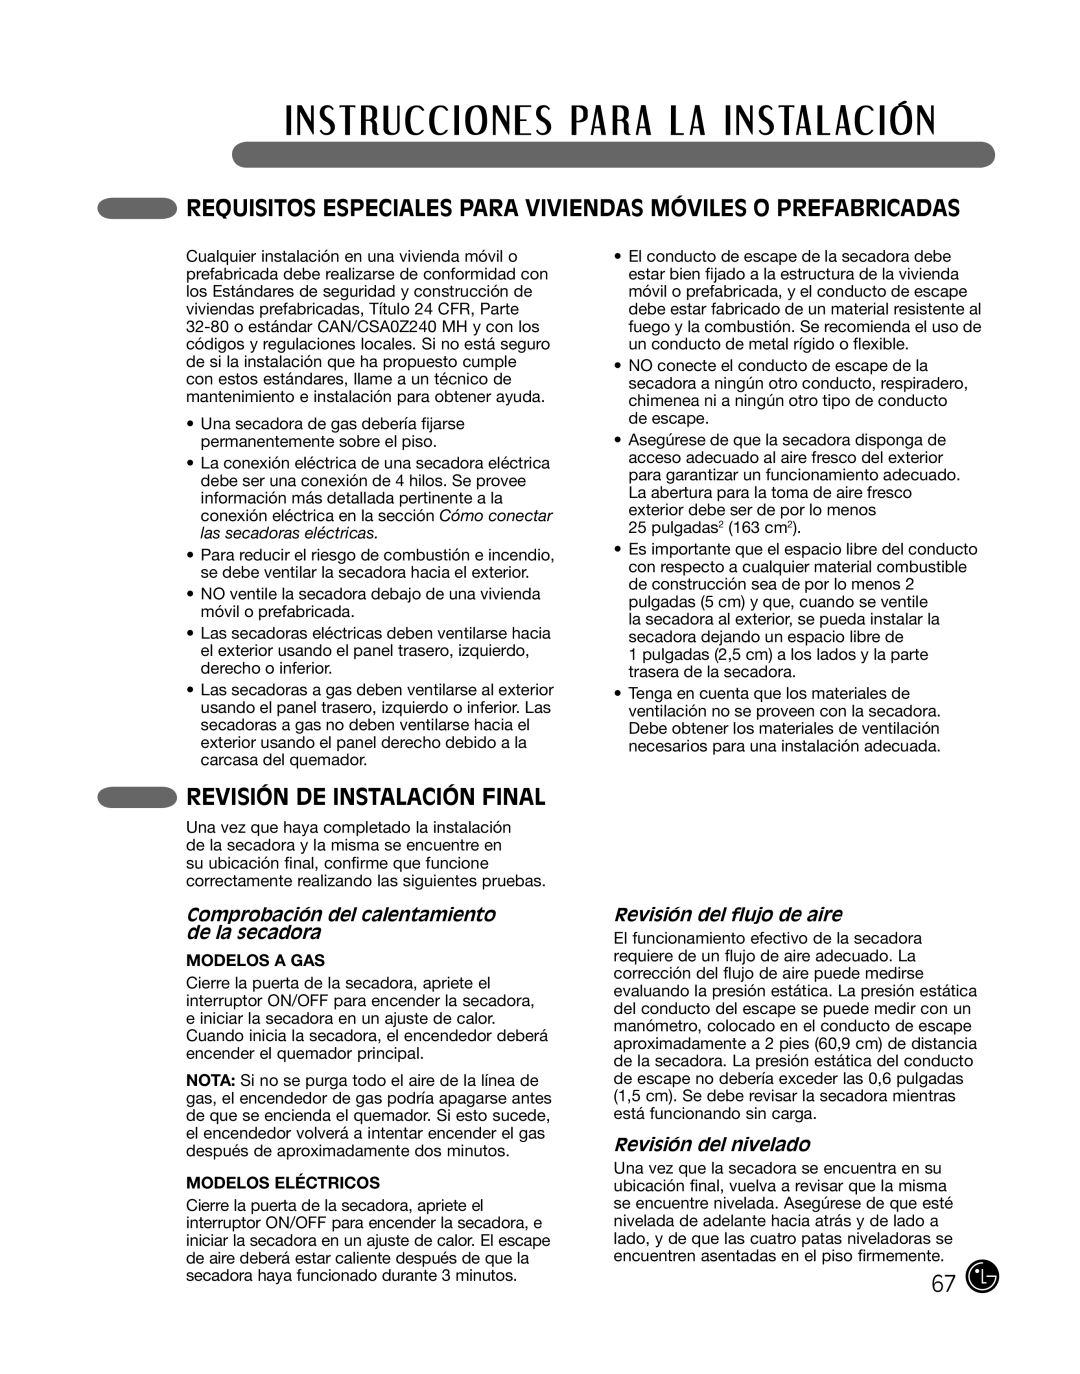 LG Electronics P154 manual Requisitos Especiales Para Viviendas Móviles O Prefabricadas, Revisión De Instalación Final 